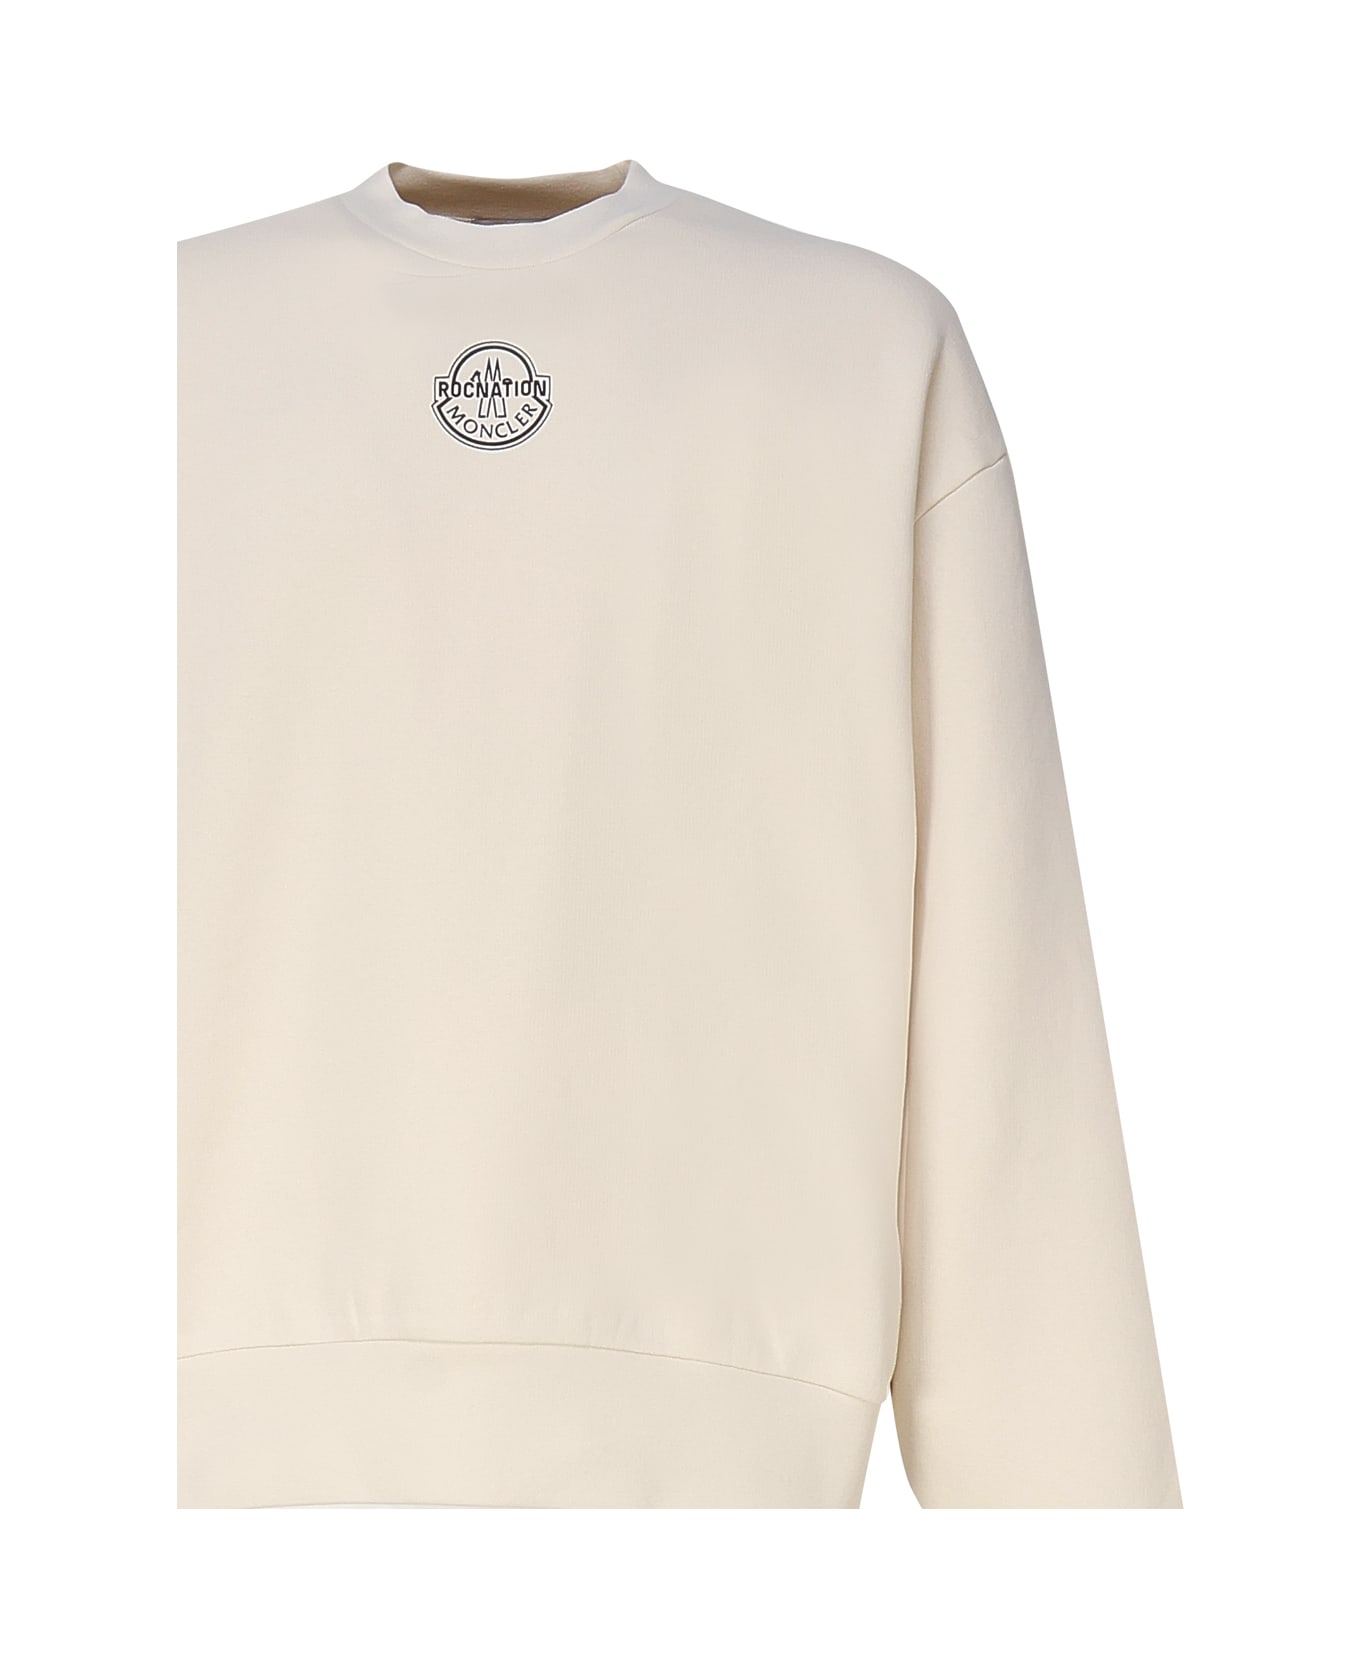 Moncler Genius Logoed Sweatshirt - White